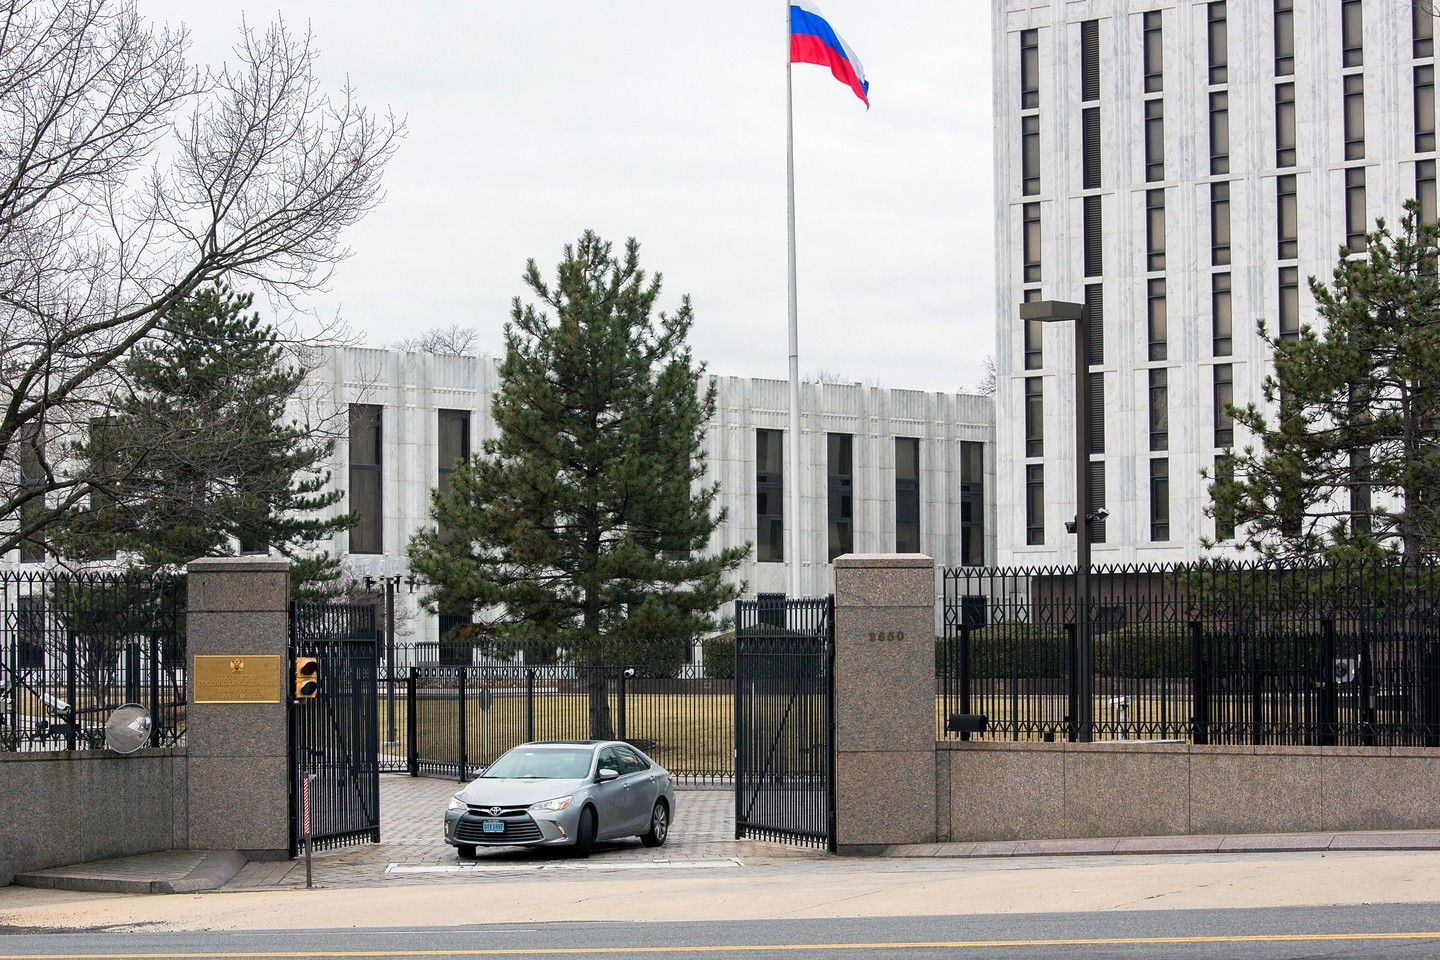 Vaşinqton 27 rus diplomatı ölkədən çıxardı – GƏRGİNLİK PİK SƏVİYYƏYƏ ÇATDI